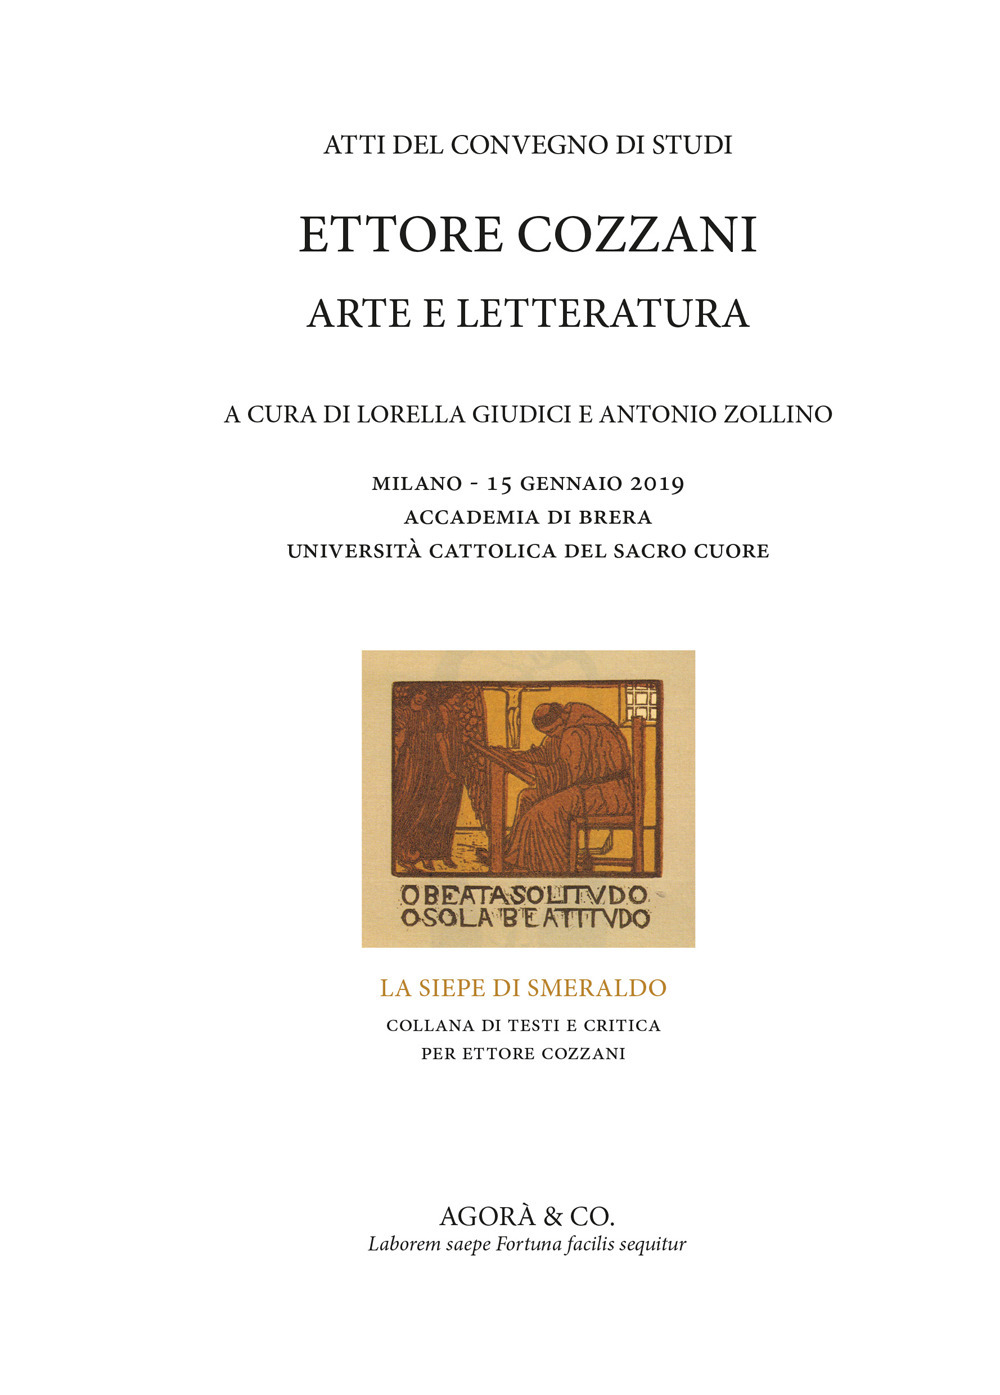 Ettore Cozzani. Arte e letteratura. Atti del Convegno di studi (Milano, 15 gennaio 2019)